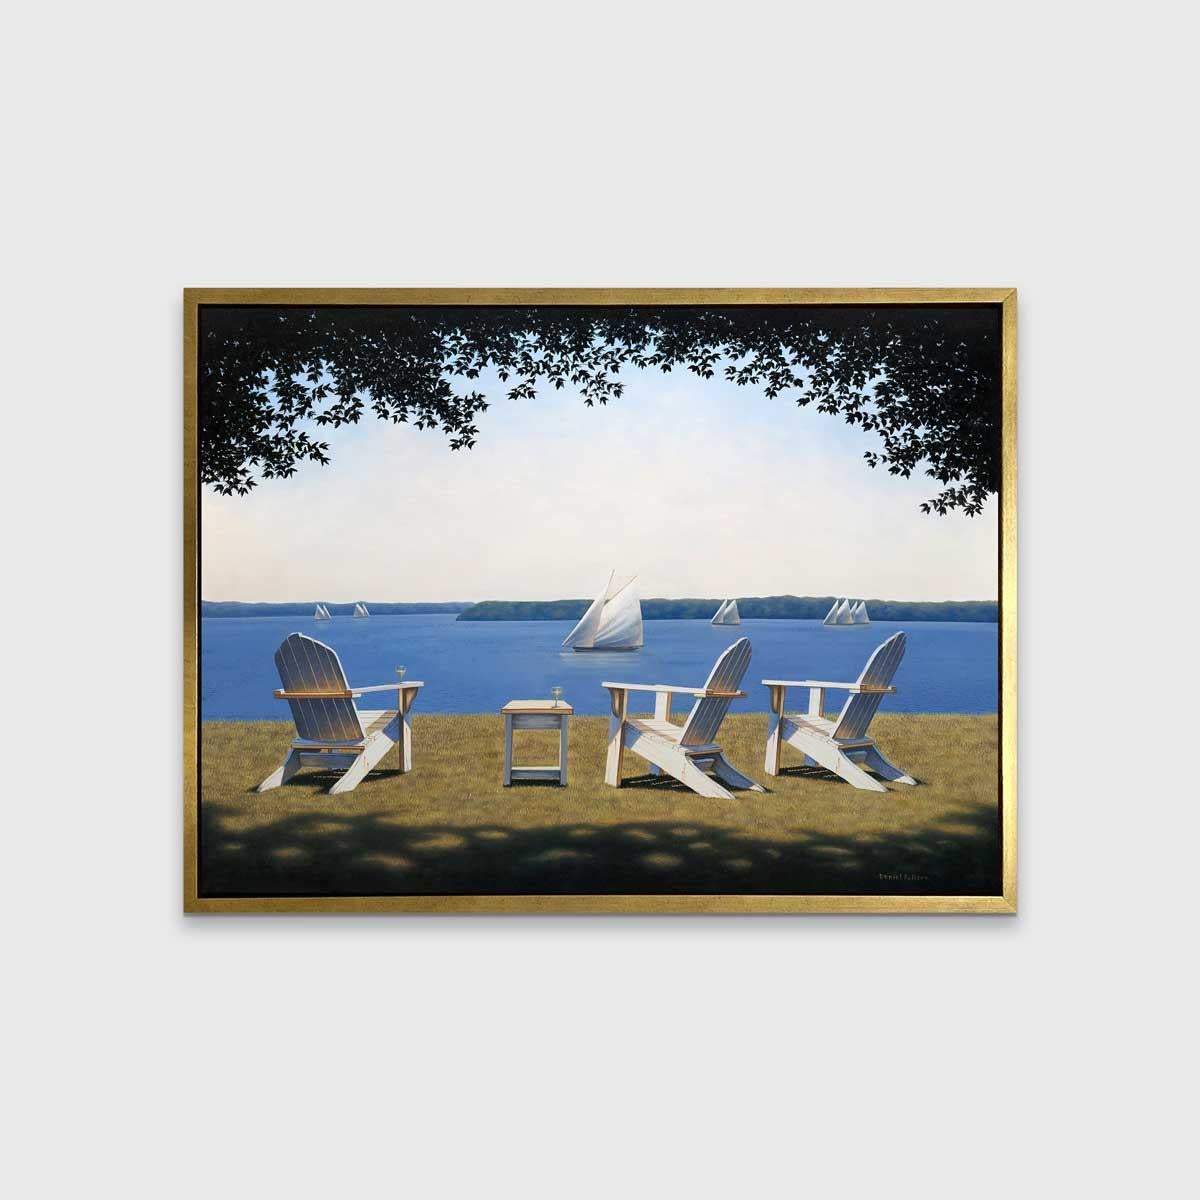 Dieses traditionelle Küstenmotiv in limitierter Auflage von Daniel Pollera zeigt drei weiße Adirondack-Stühle, die im Gras stehen und ein Gewässer überblicken. Mehrere Segelboote sind in der Nähe und weiter draußen entlang der Horizontlinie zu